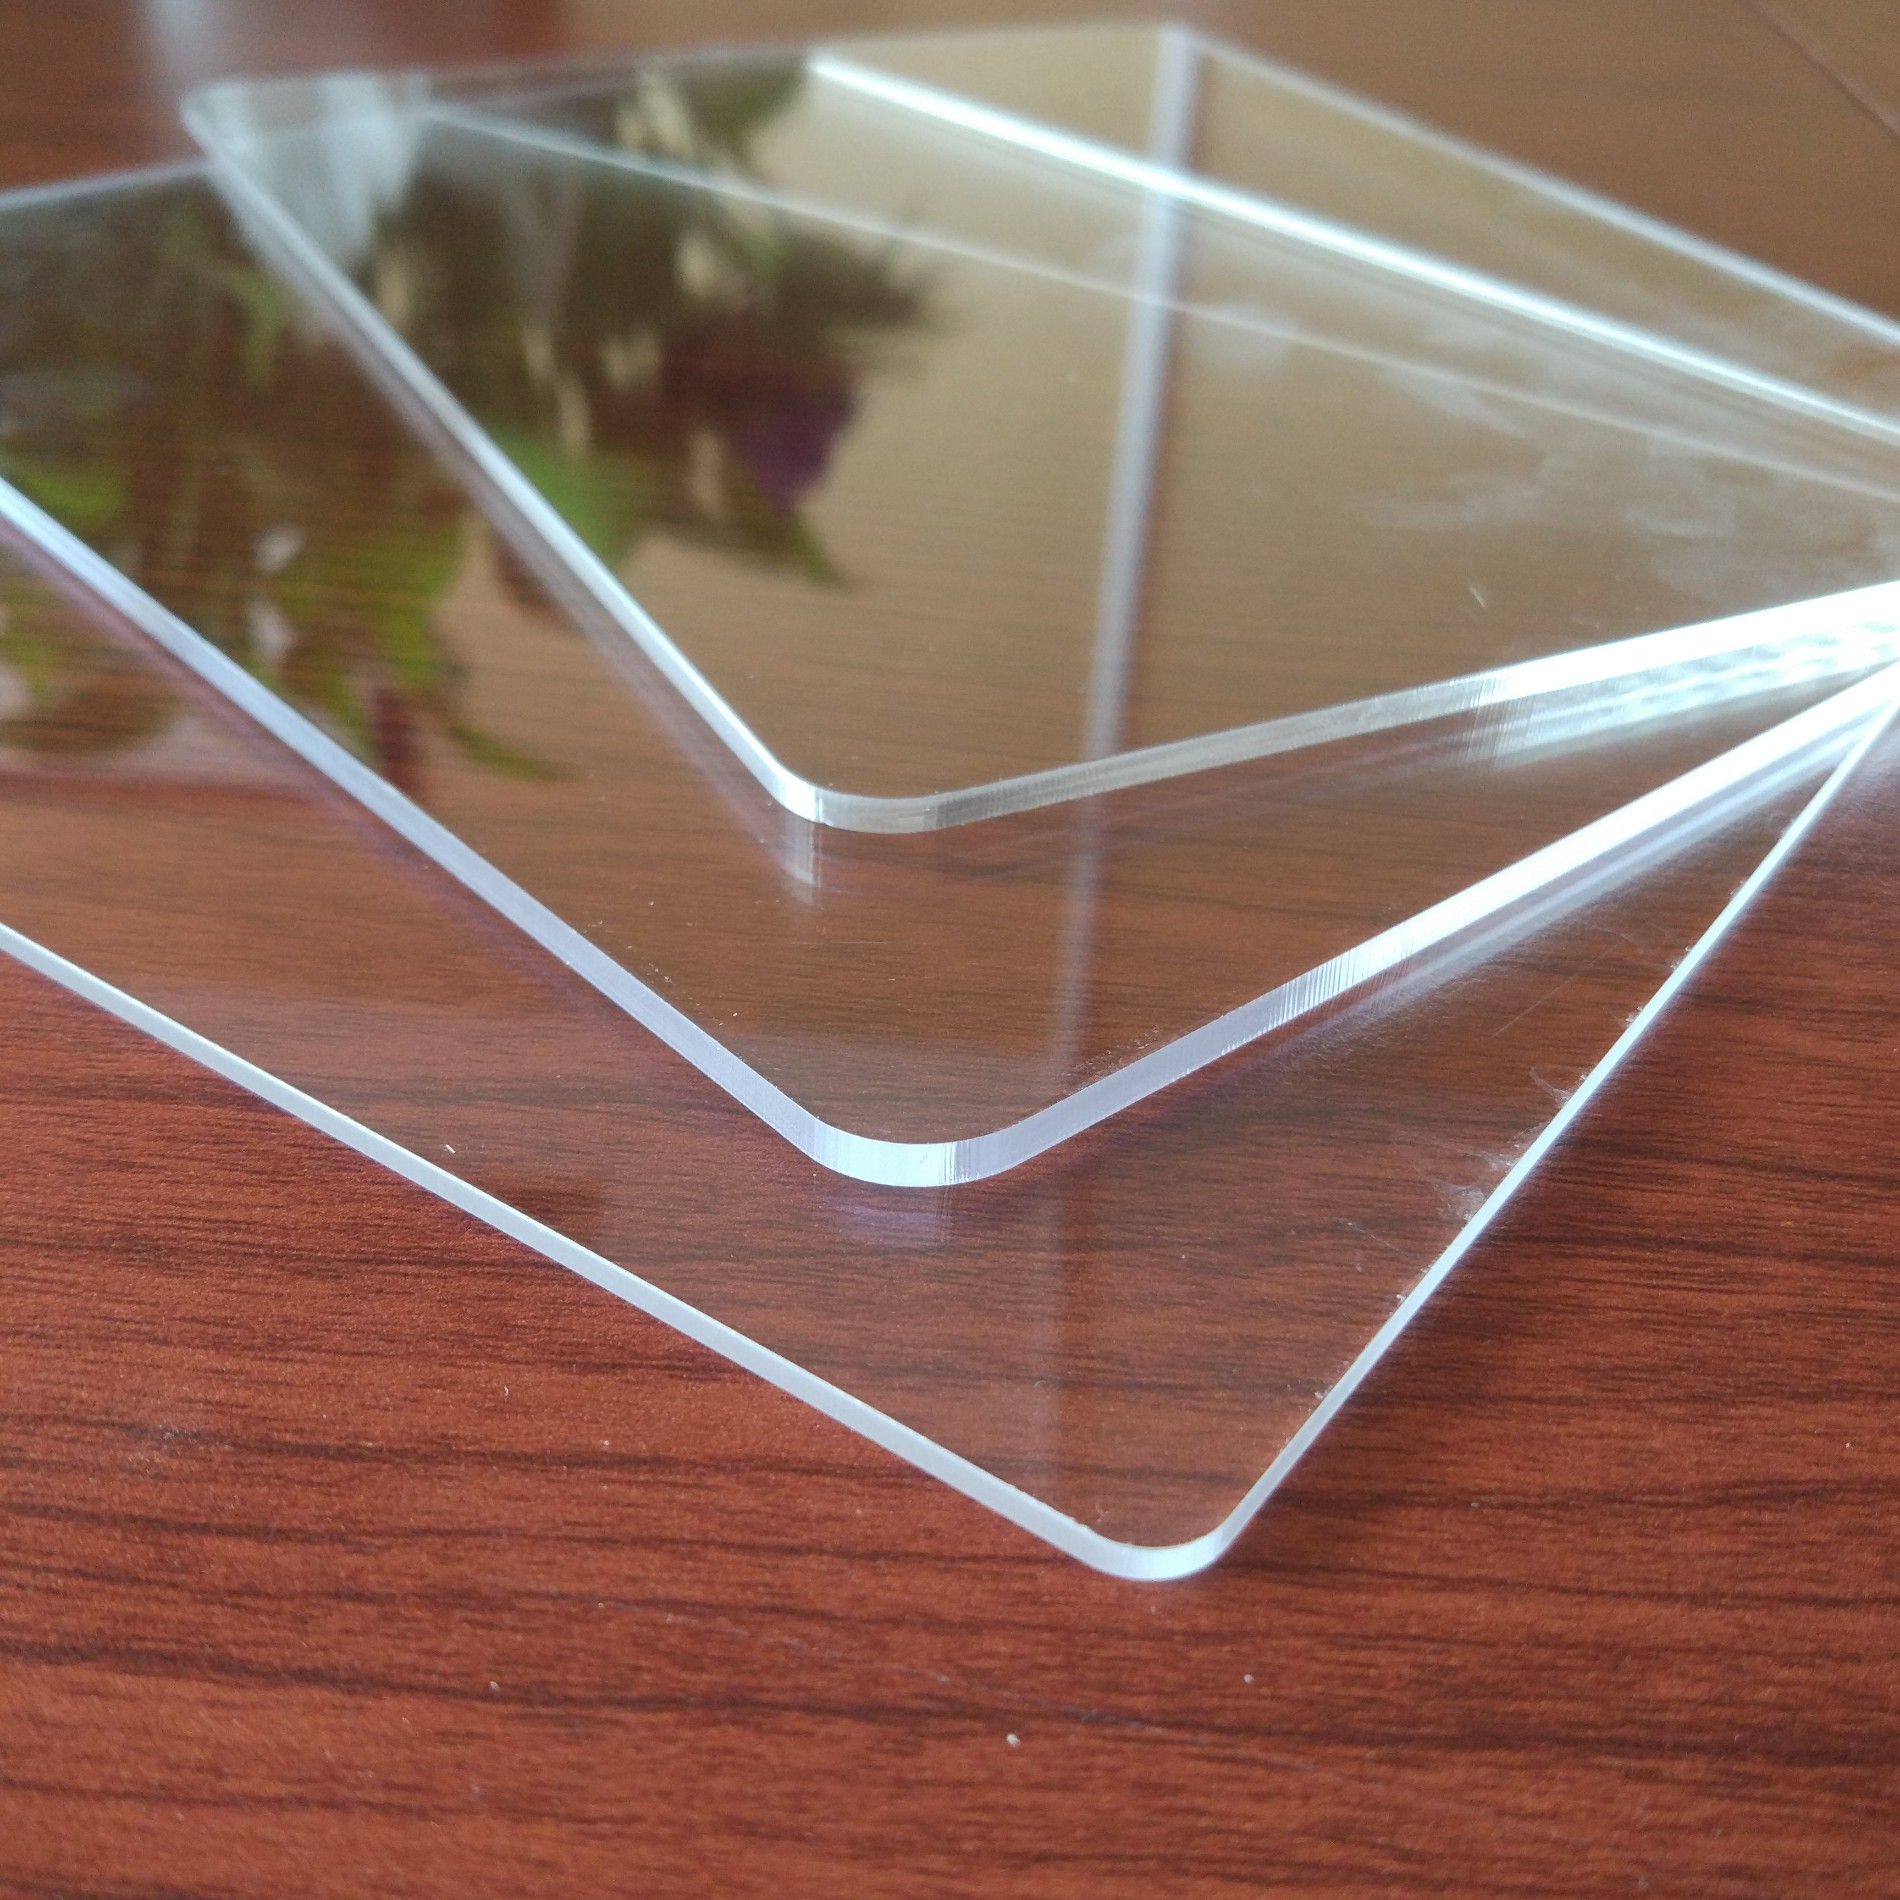 Mua chất lượng cao 6x4 acrylic tấm plexiglass 6x8 nhựa 8 x 4,chất lượng cao 6x4 acrylic tấm plexiglass 6x8 nhựa 8 x 4 Giá ,chất lượng cao 6x4 acrylic tấm plexiglass 6x8 nhựa 8 x 4 Brands,chất lượng cao 6x4 acrylic tấm plexiglass 6x8 nhựa 8 x 4 Nhà sản xuất,chất lượng cao 6x4 acrylic tấm plexiglass 6x8 nhựa 8 x 4 Quotes,chất lượng cao 6x4 acrylic tấm plexiglass 6x8 nhựa 8 x 4 Công ty